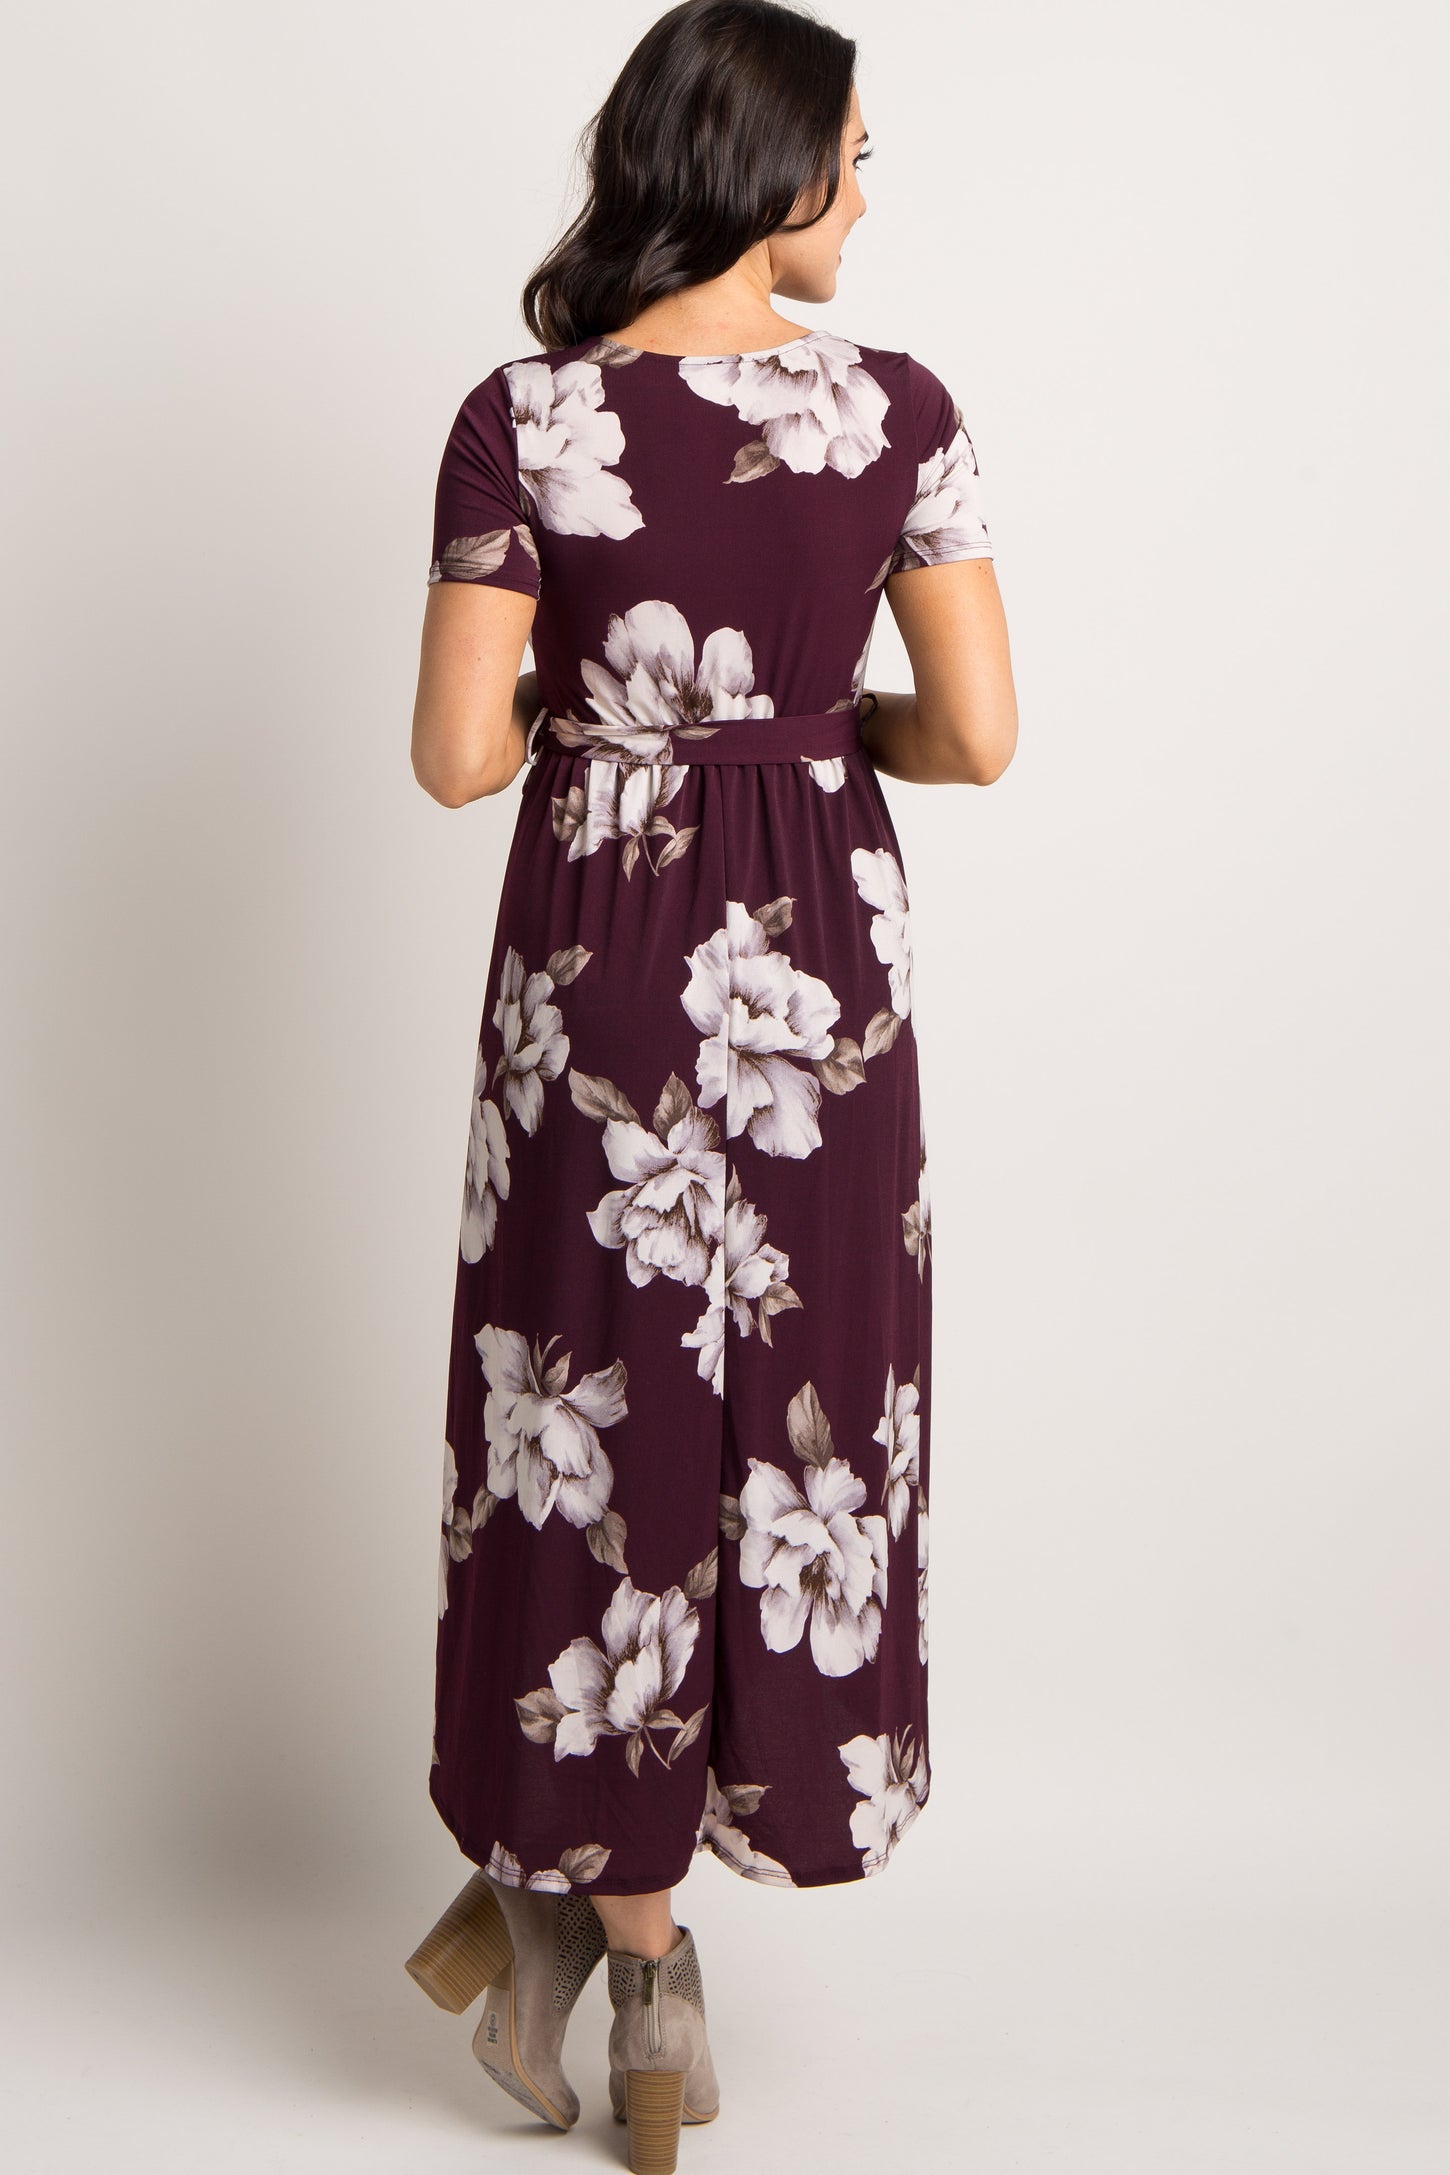 Plum Floral Hi-Low Wrap Dress